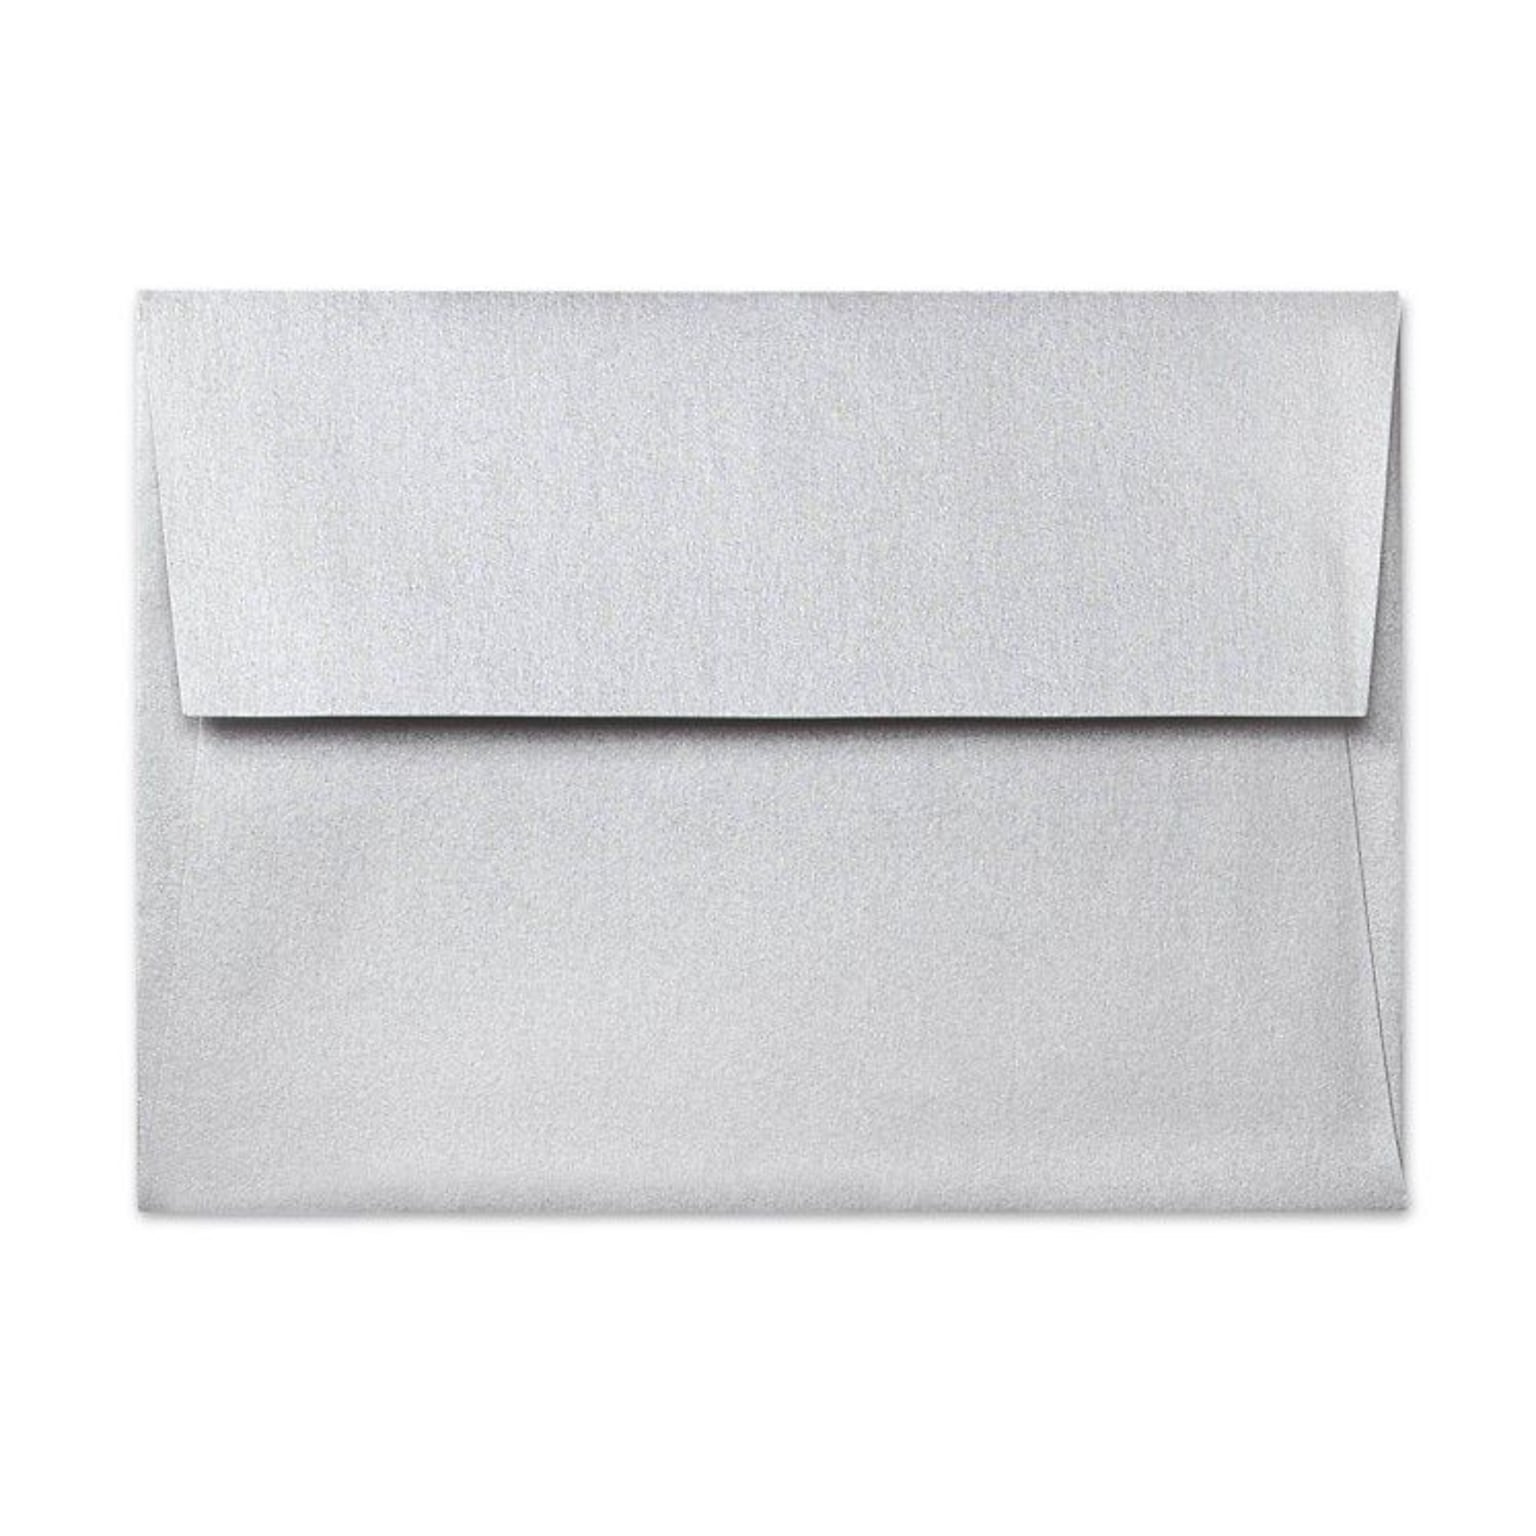 LUX® 80lb 5 3/4x8 3/4 Square Flap Metallic Envelopes W/Peel&Press; Silver, 500/BX